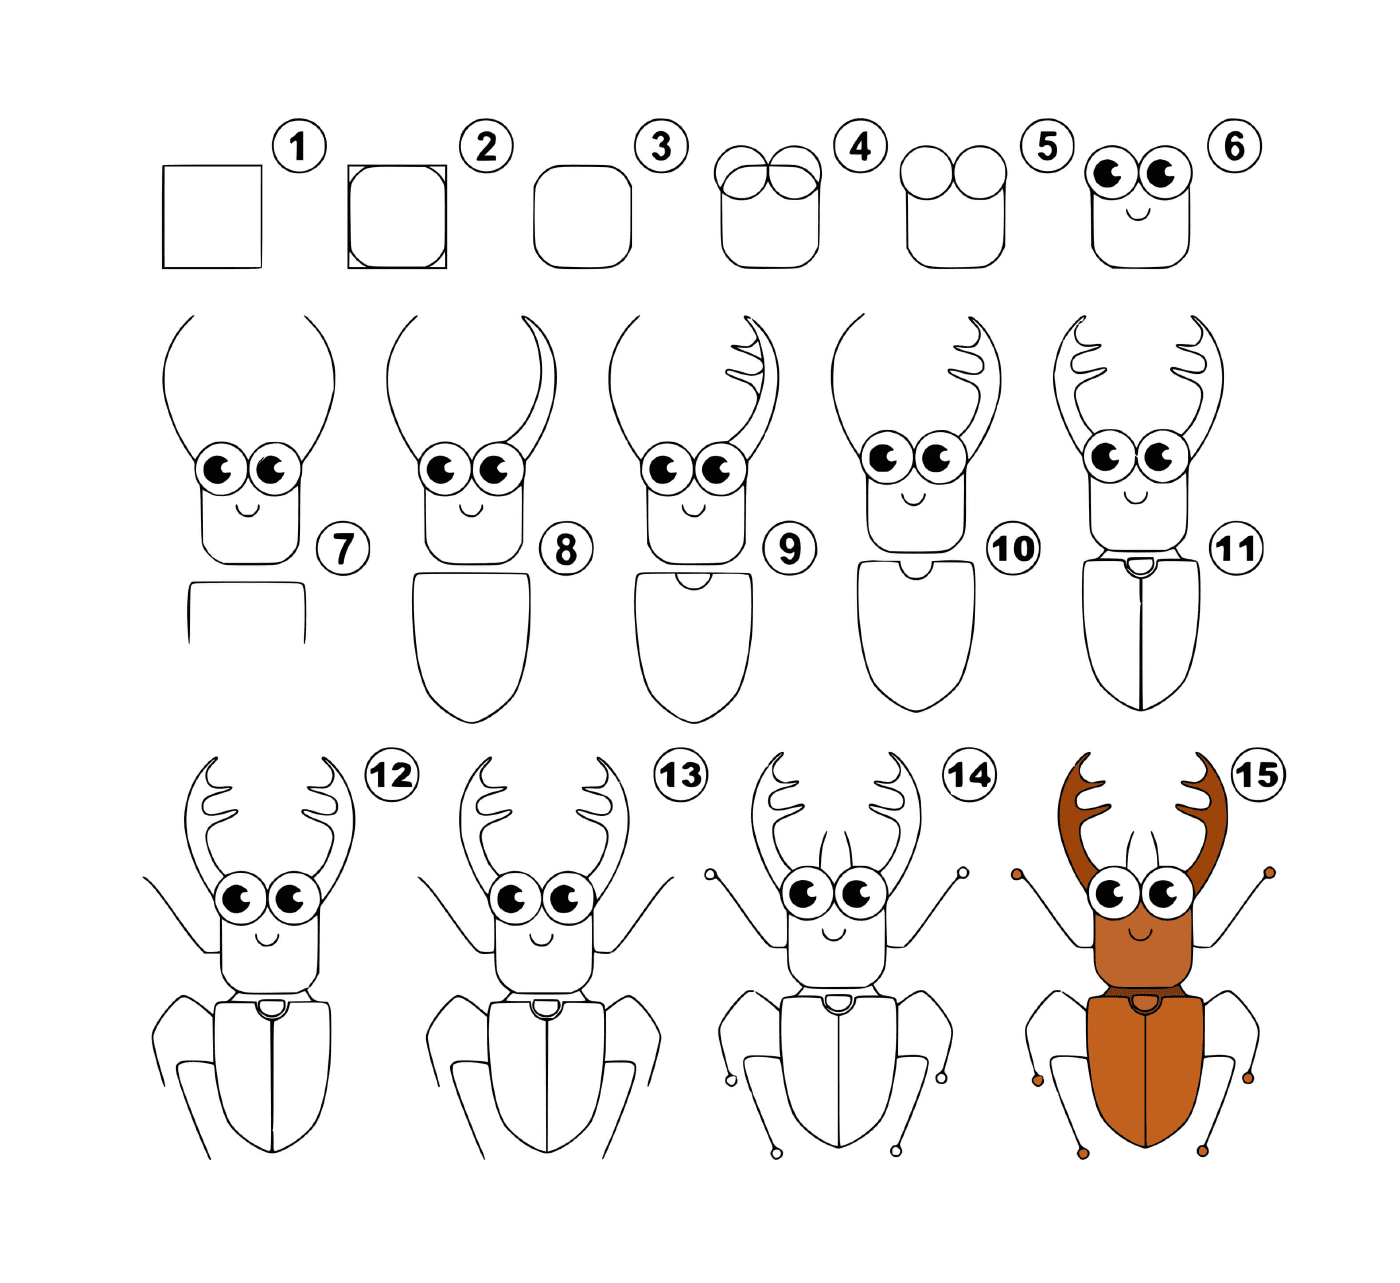  Cómo dibujar una cucaracha fácilmente 